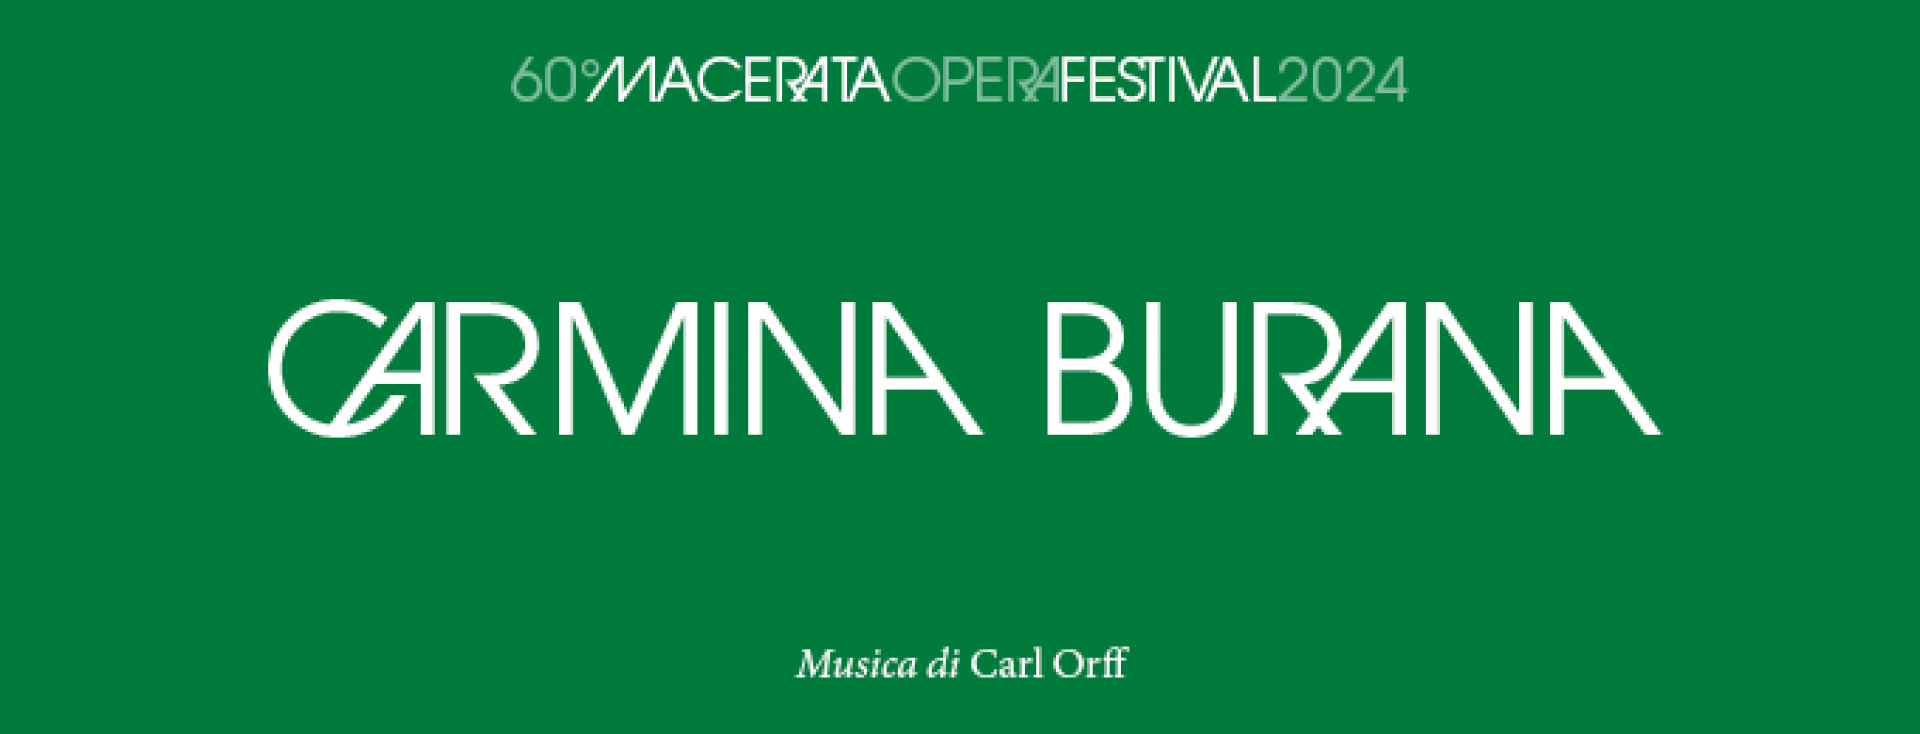 Carmina Burana -Macerata Opera Festival 2024